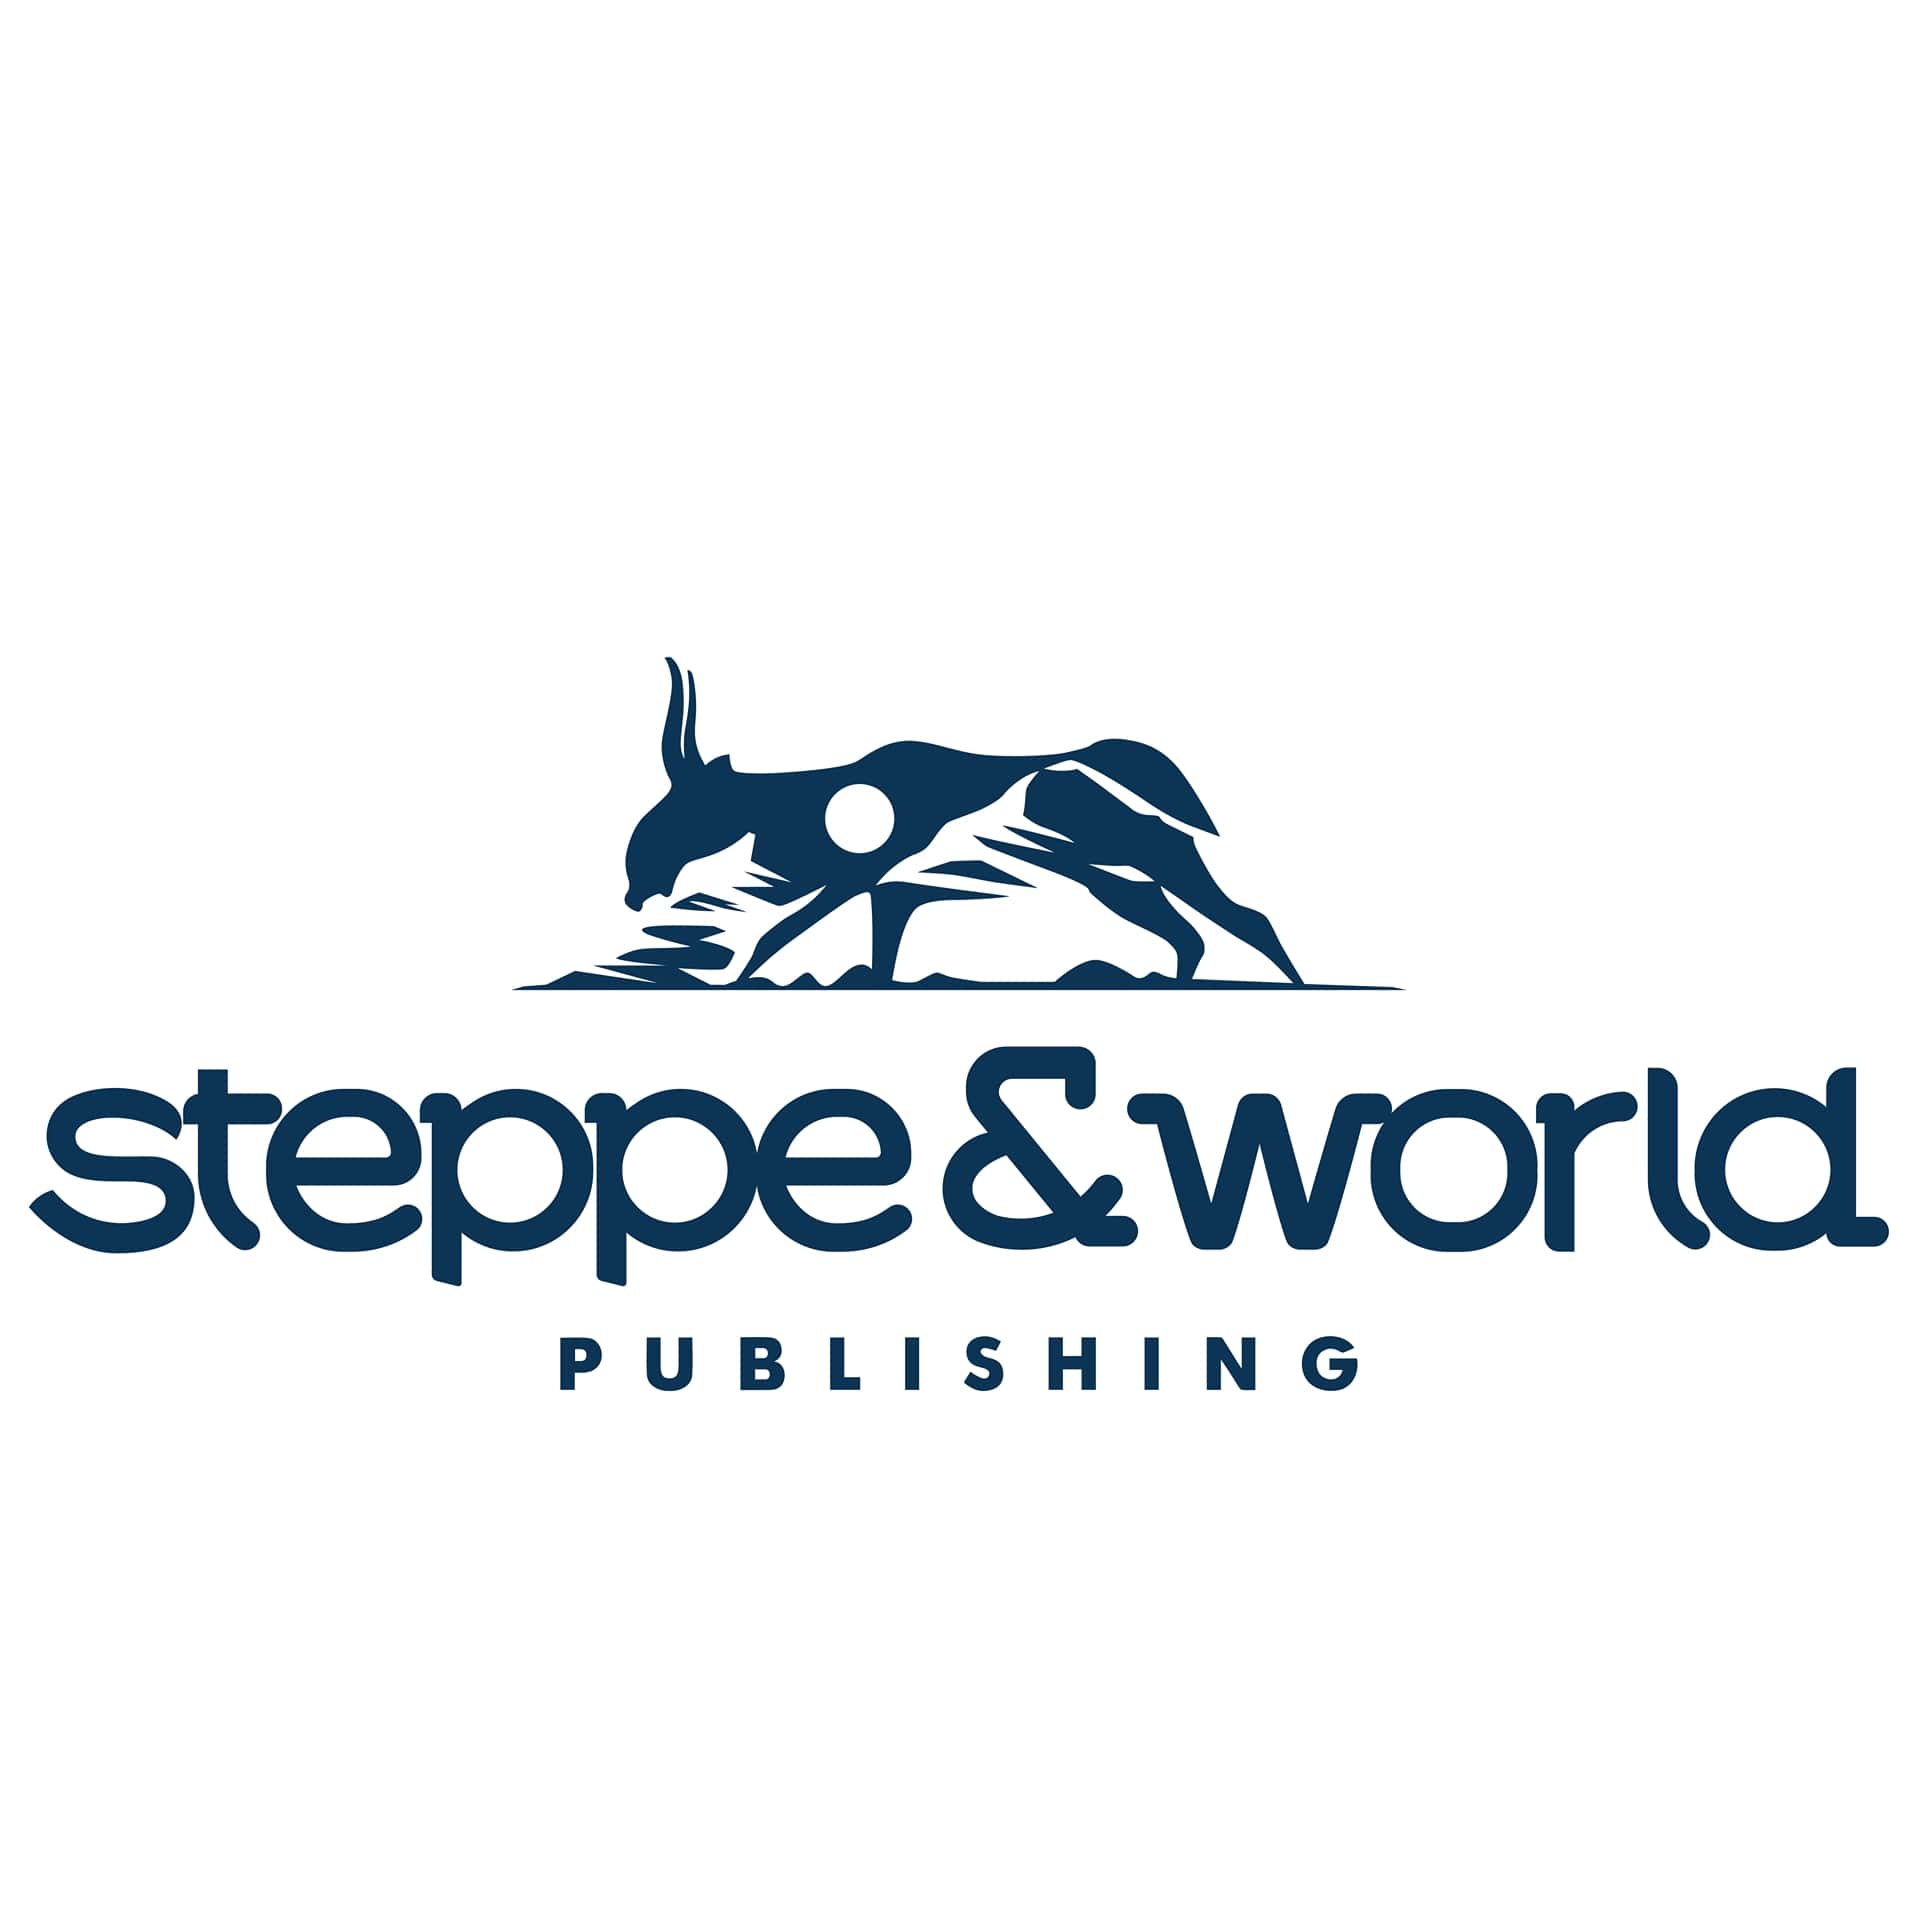 Steppe&World Publishing